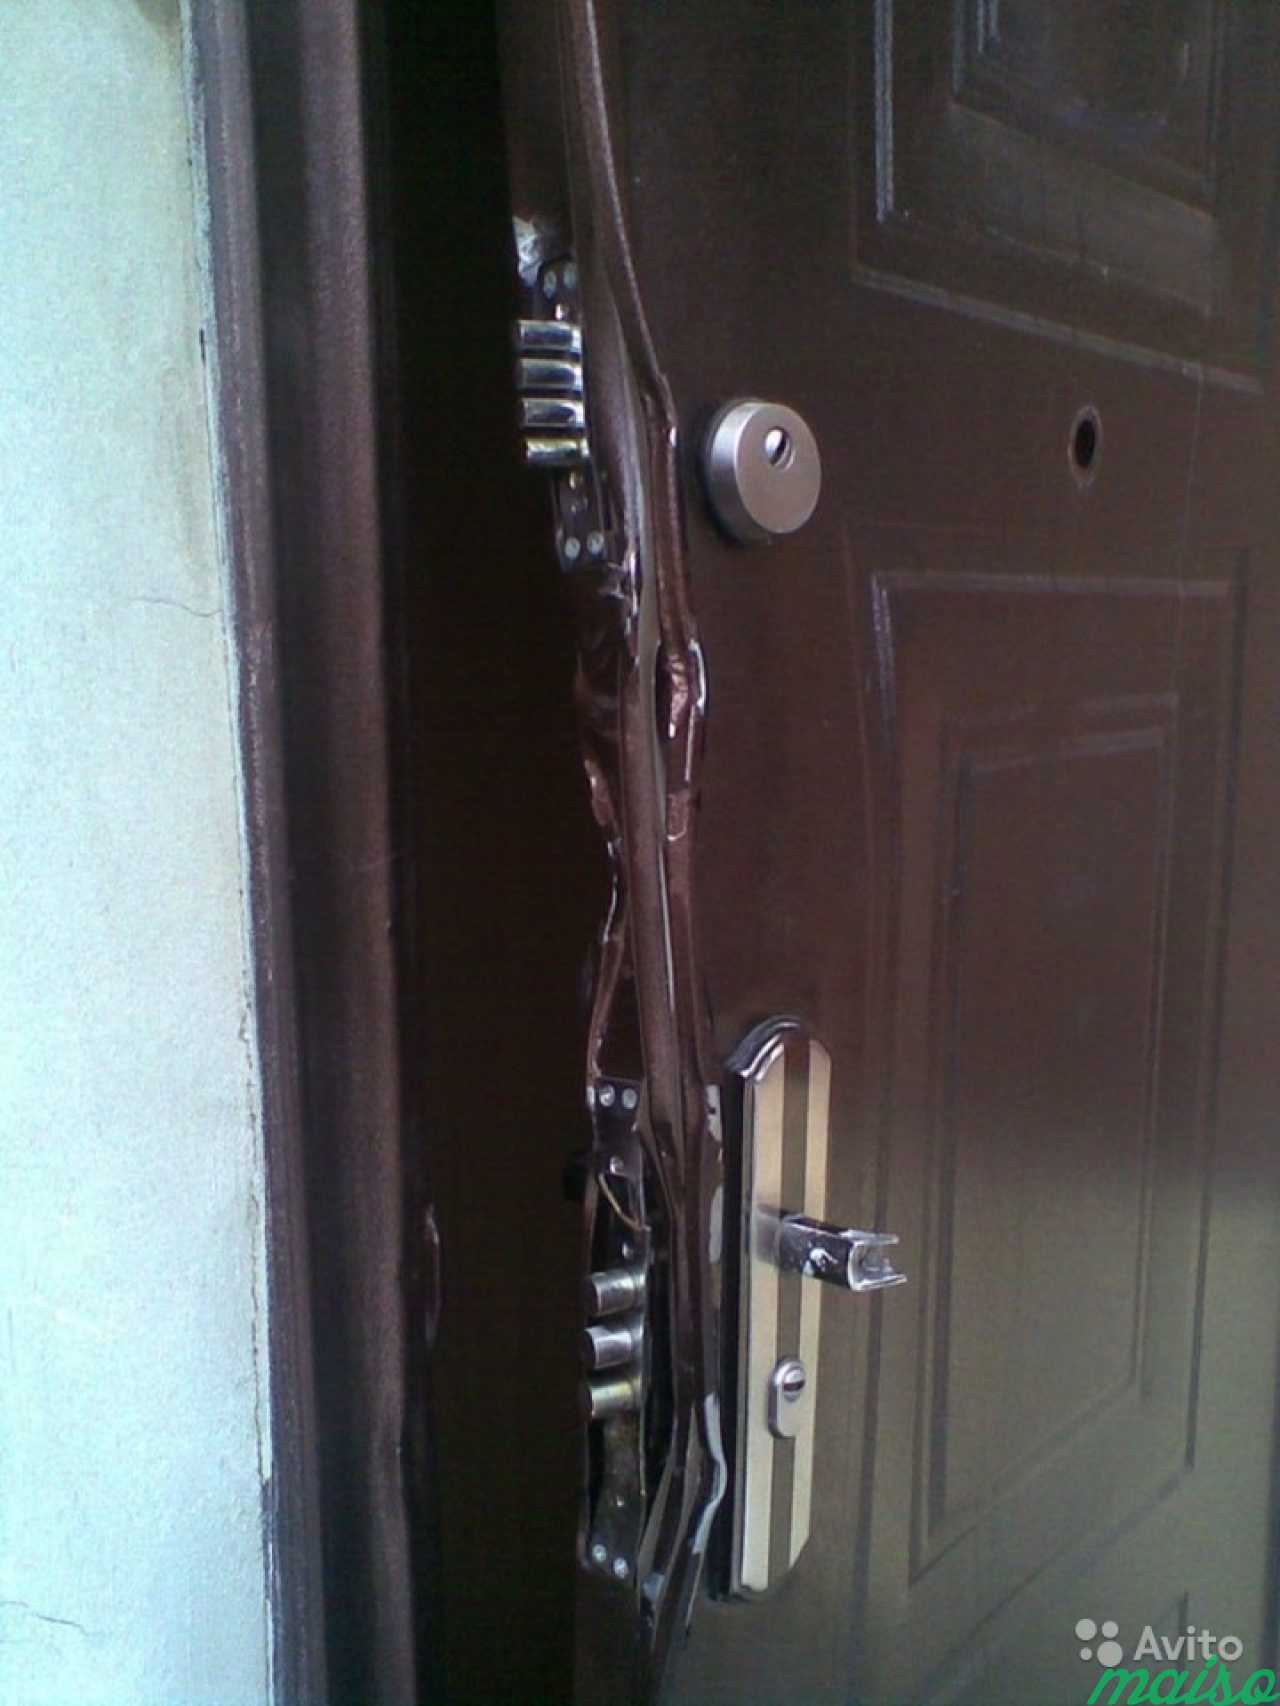 Сломалась железная дверь. Китайская дверь входная GBZG Кайзер замки. Взломанная входная дверь. Сломанные двери металлические входные. Поврежденная входная дверь.